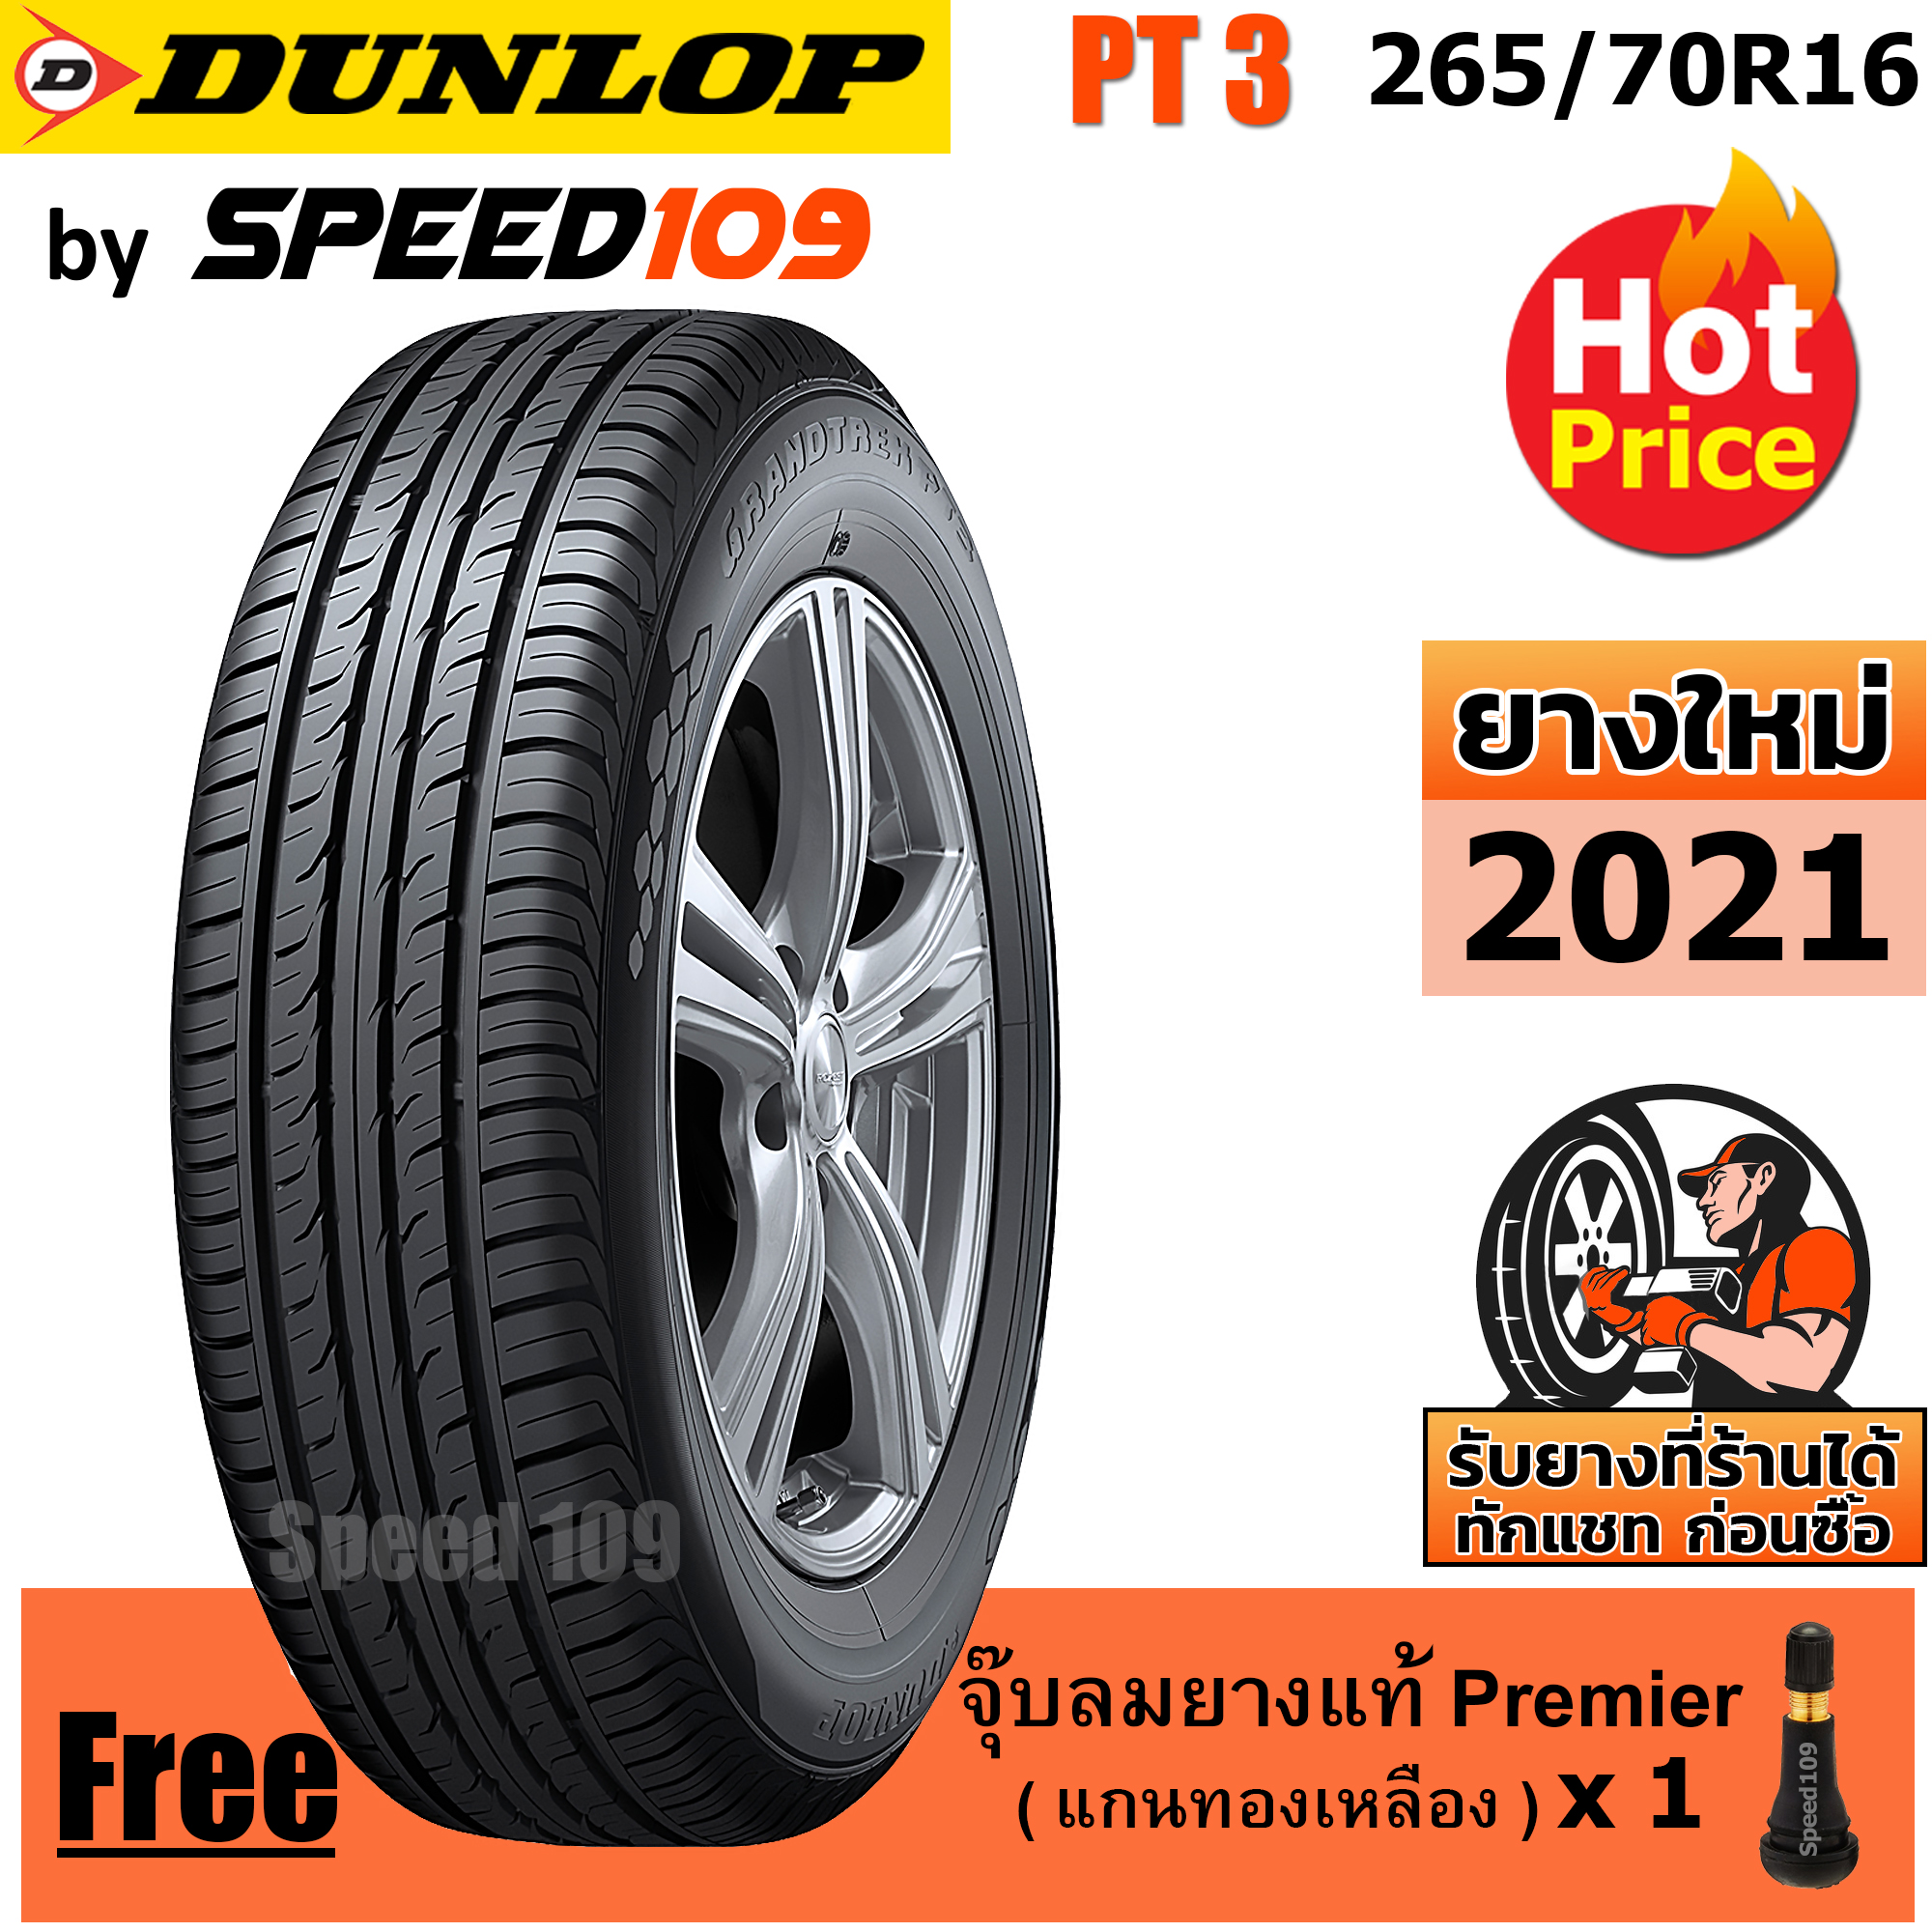 DUNLOP ยางรถยนต์ ขอบ 16 ขนาด 265/70R16 รุ่น Grandtrek PT3 - 1 เส้น (ปี 2021)